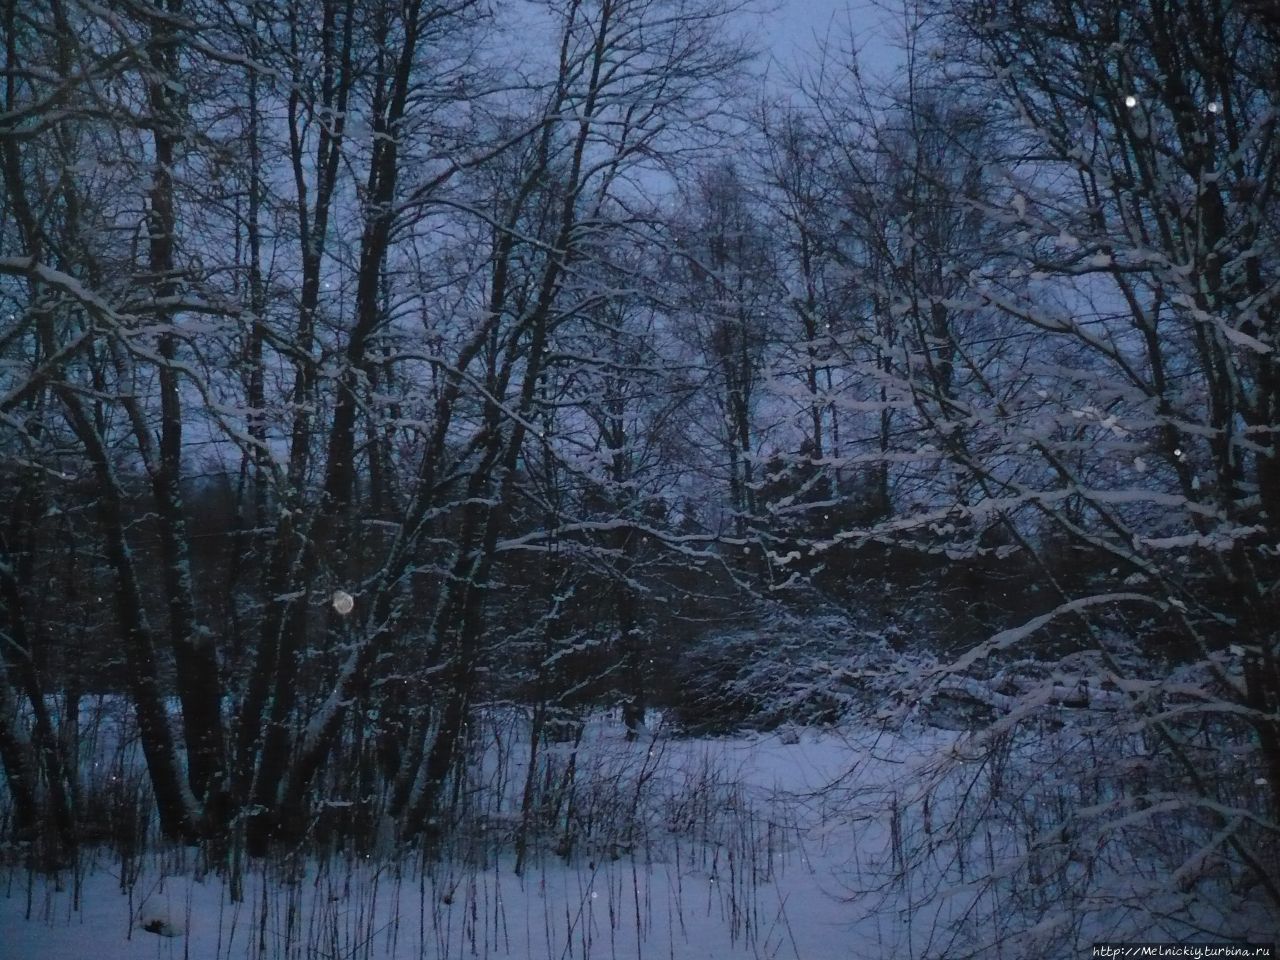 Заброшенная мельница на речке Skogsforsen Сиунтио, Финляндия